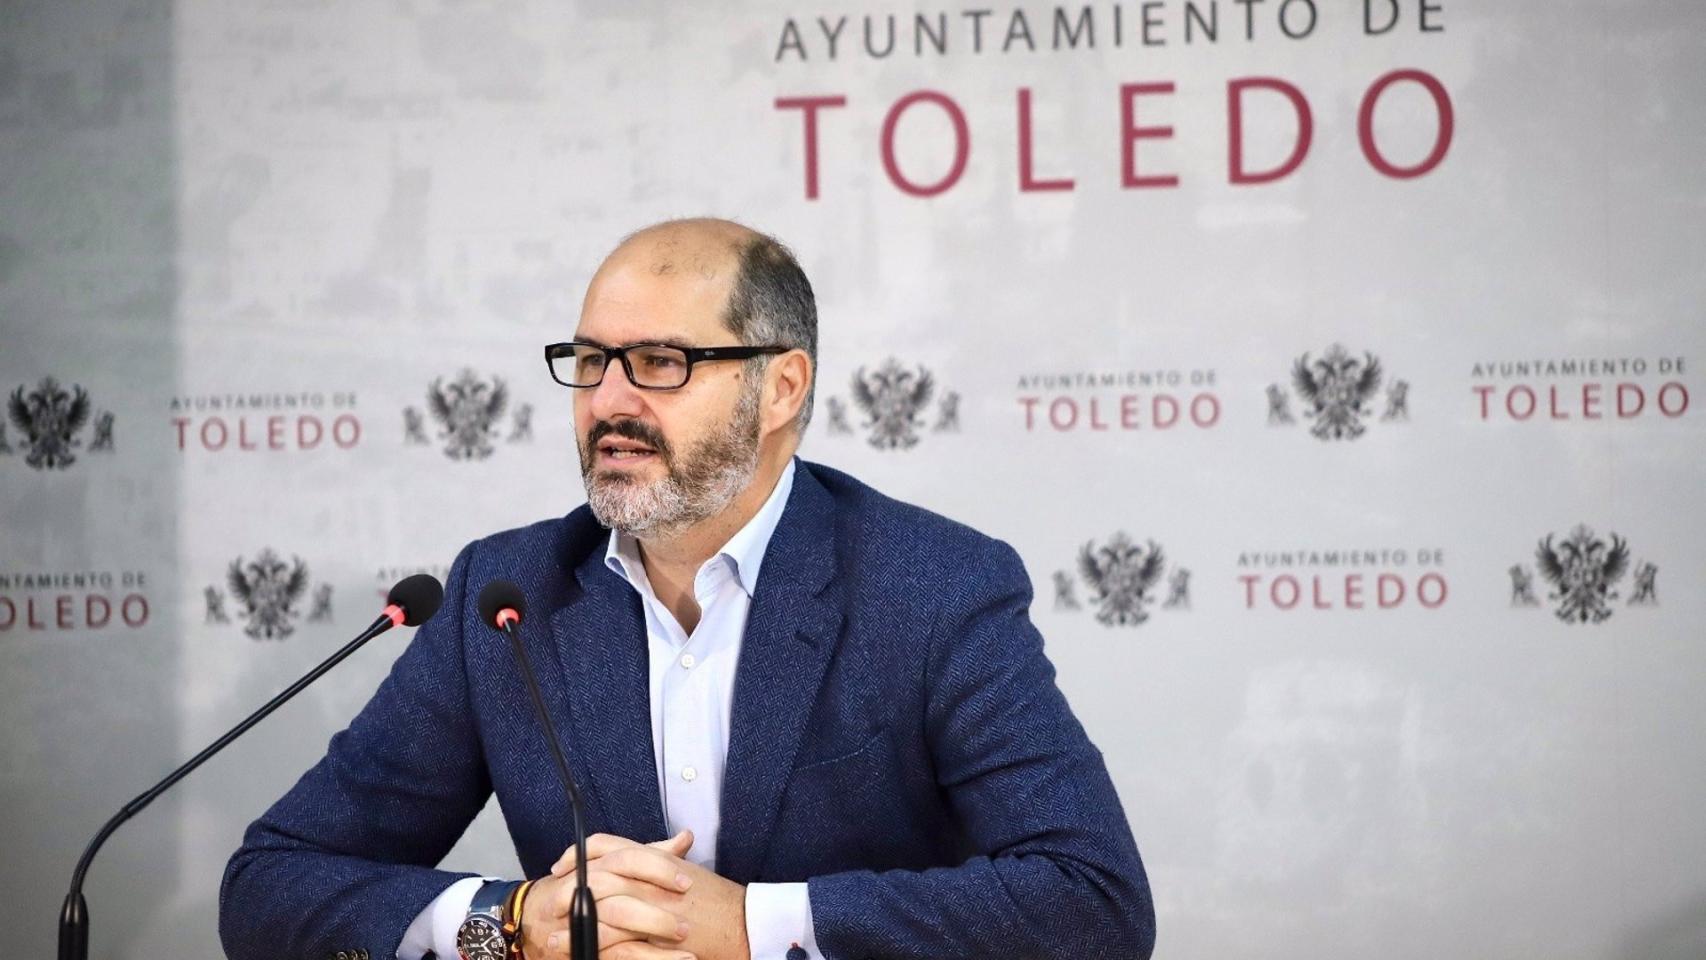 José Manuel Velasco, teniente de alcalde de Toledo